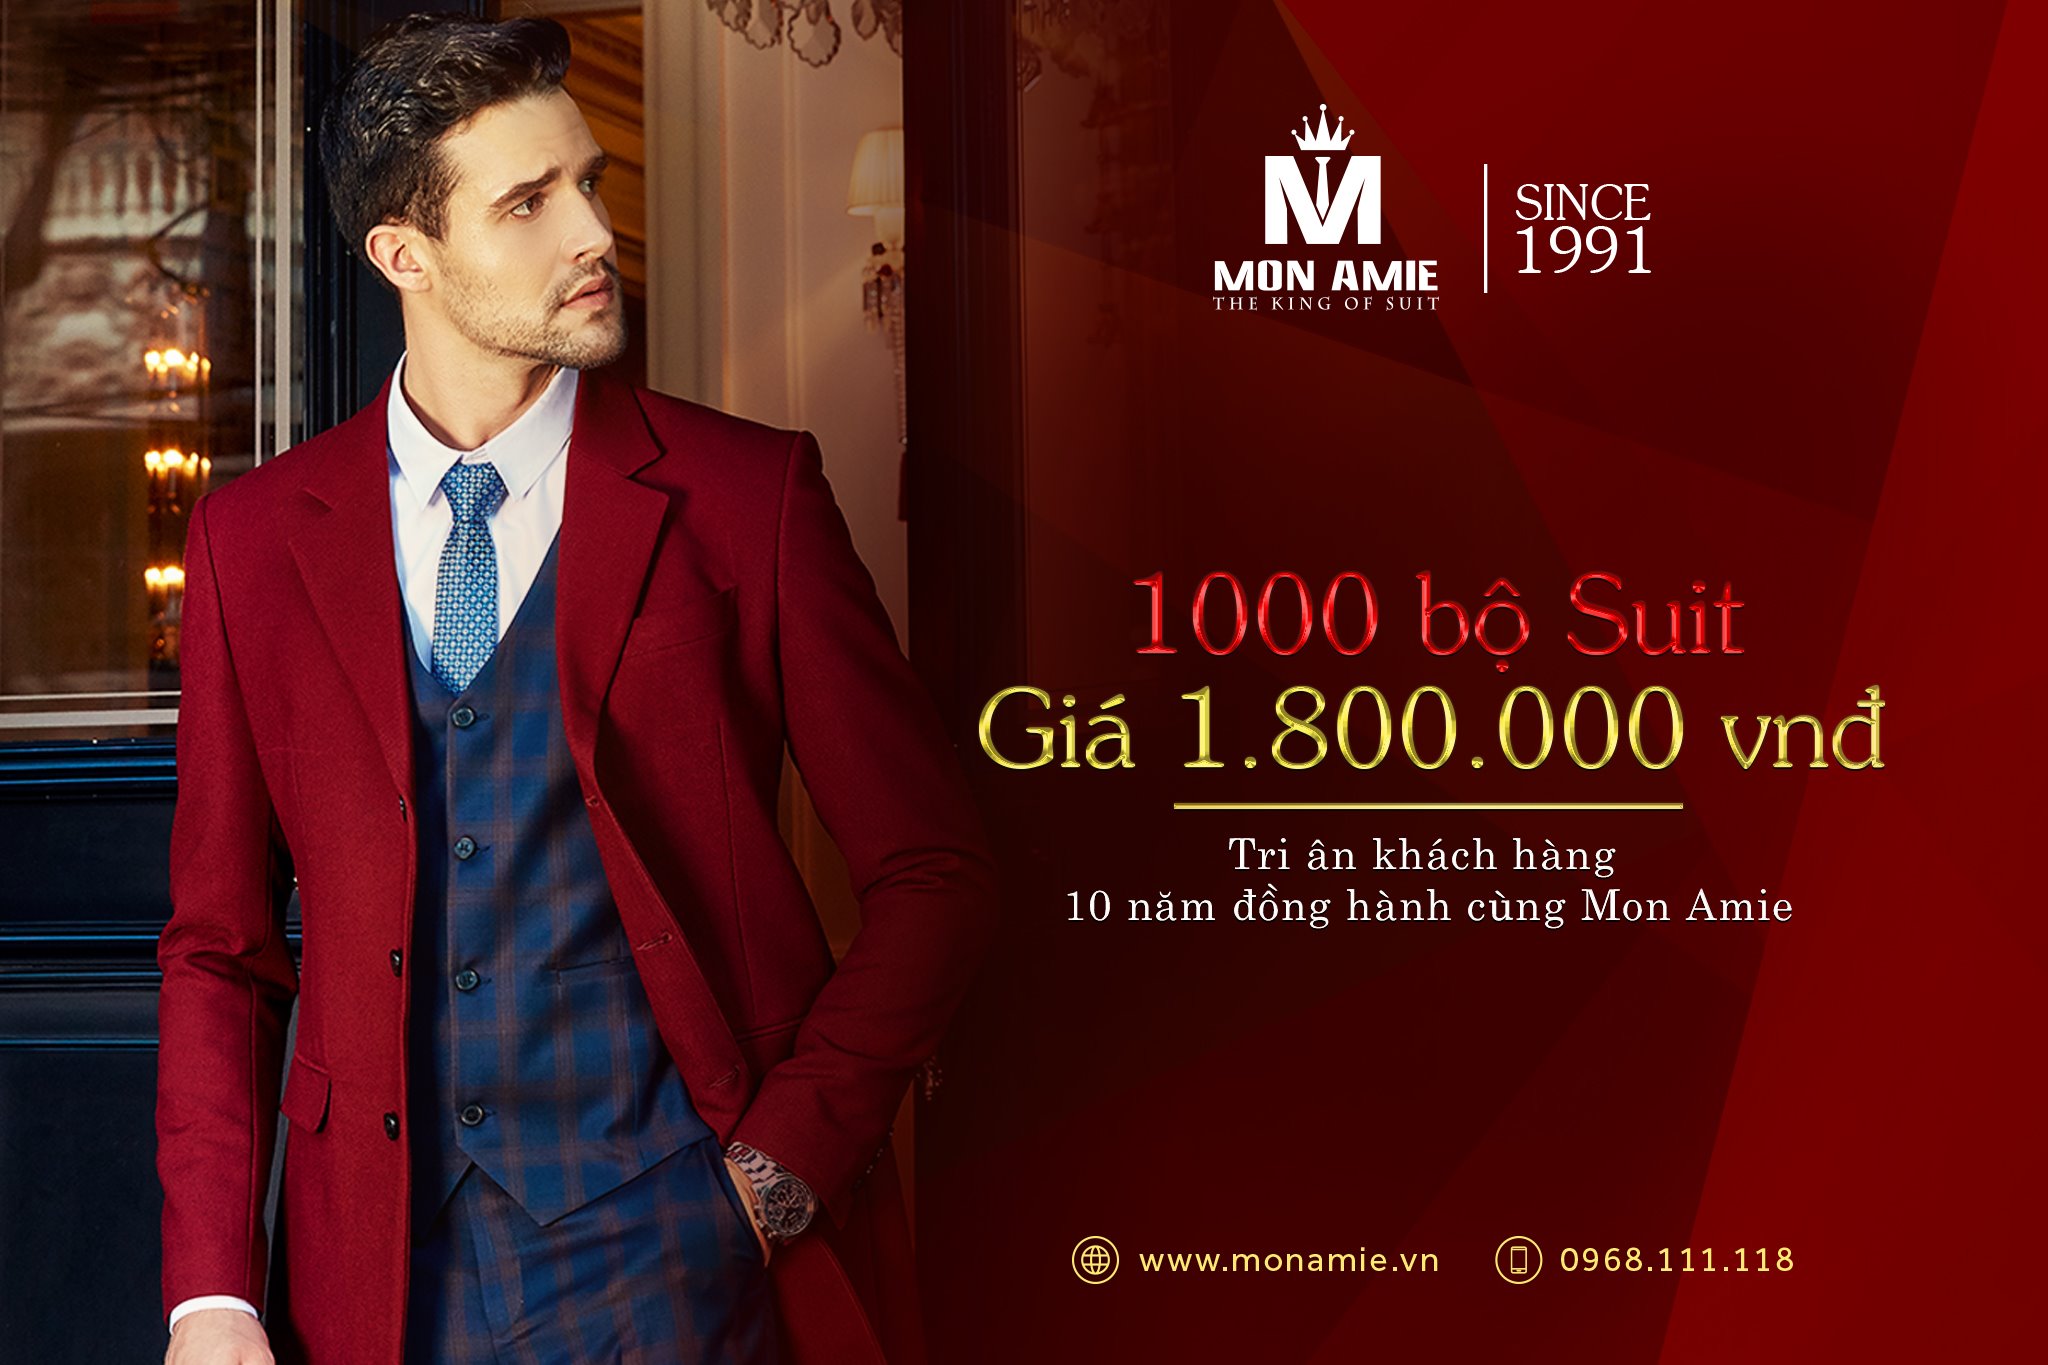 Tin khuyến mãi của Mon Amie - “1000 bộ suit giá 1.800.000đ”, bất ngờ chưa?